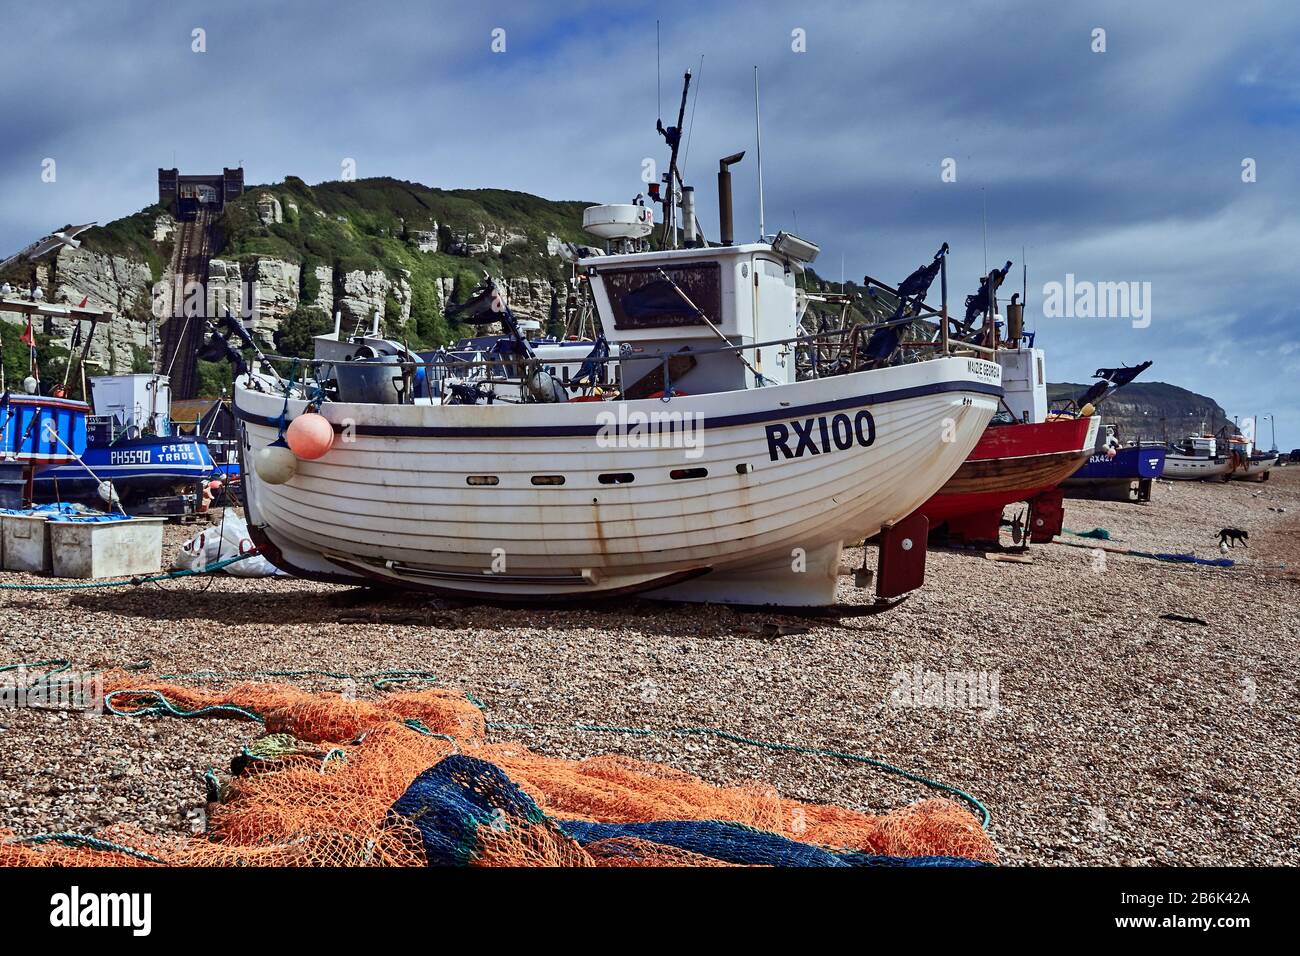 Hastings è una città e un borgo in East Sussex sulla costa meridionale dell'Inghilterra, Vieof Fishing Boat sulla spiaggia, la più grande flotta di pesca in Europa mettendo le barche al mare dalla spiaggia di ciottoli Mode de transport, Navire nautique, ?quipement de navigation Foto Stock